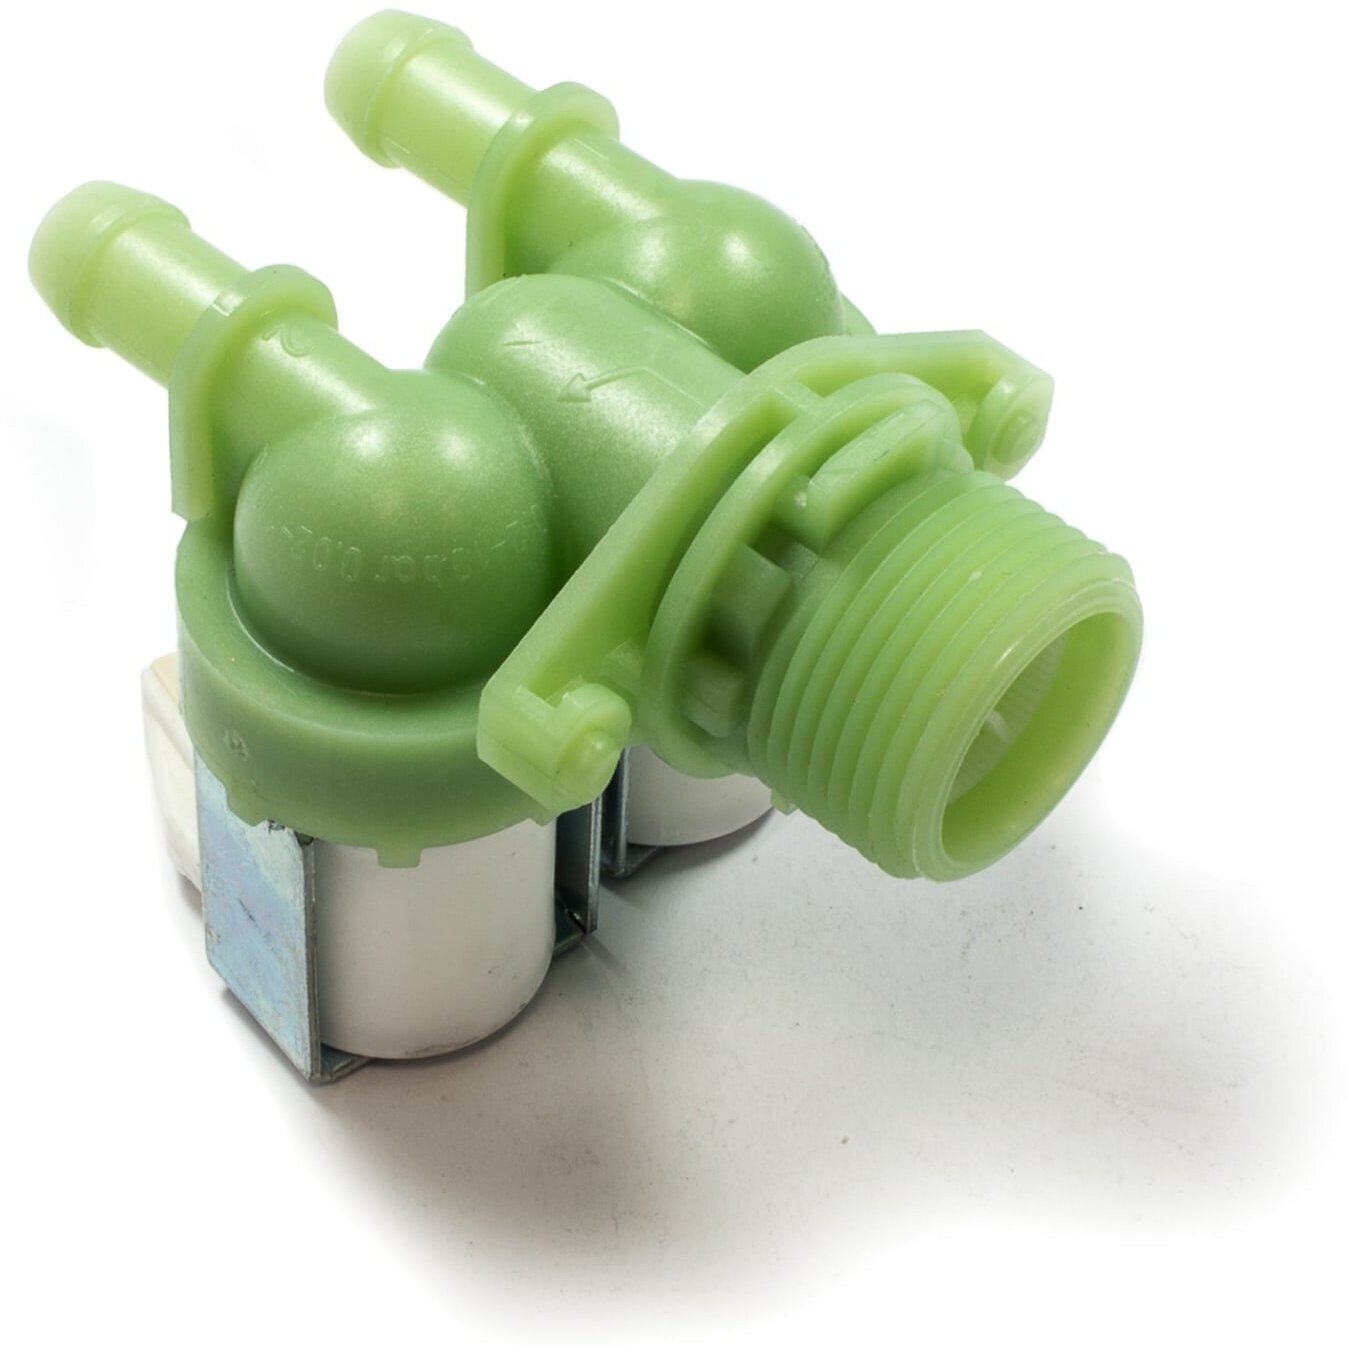 Клапан электромагнитный для стиральной машины Candy (Канди) 2Wx180 -VAL025CY